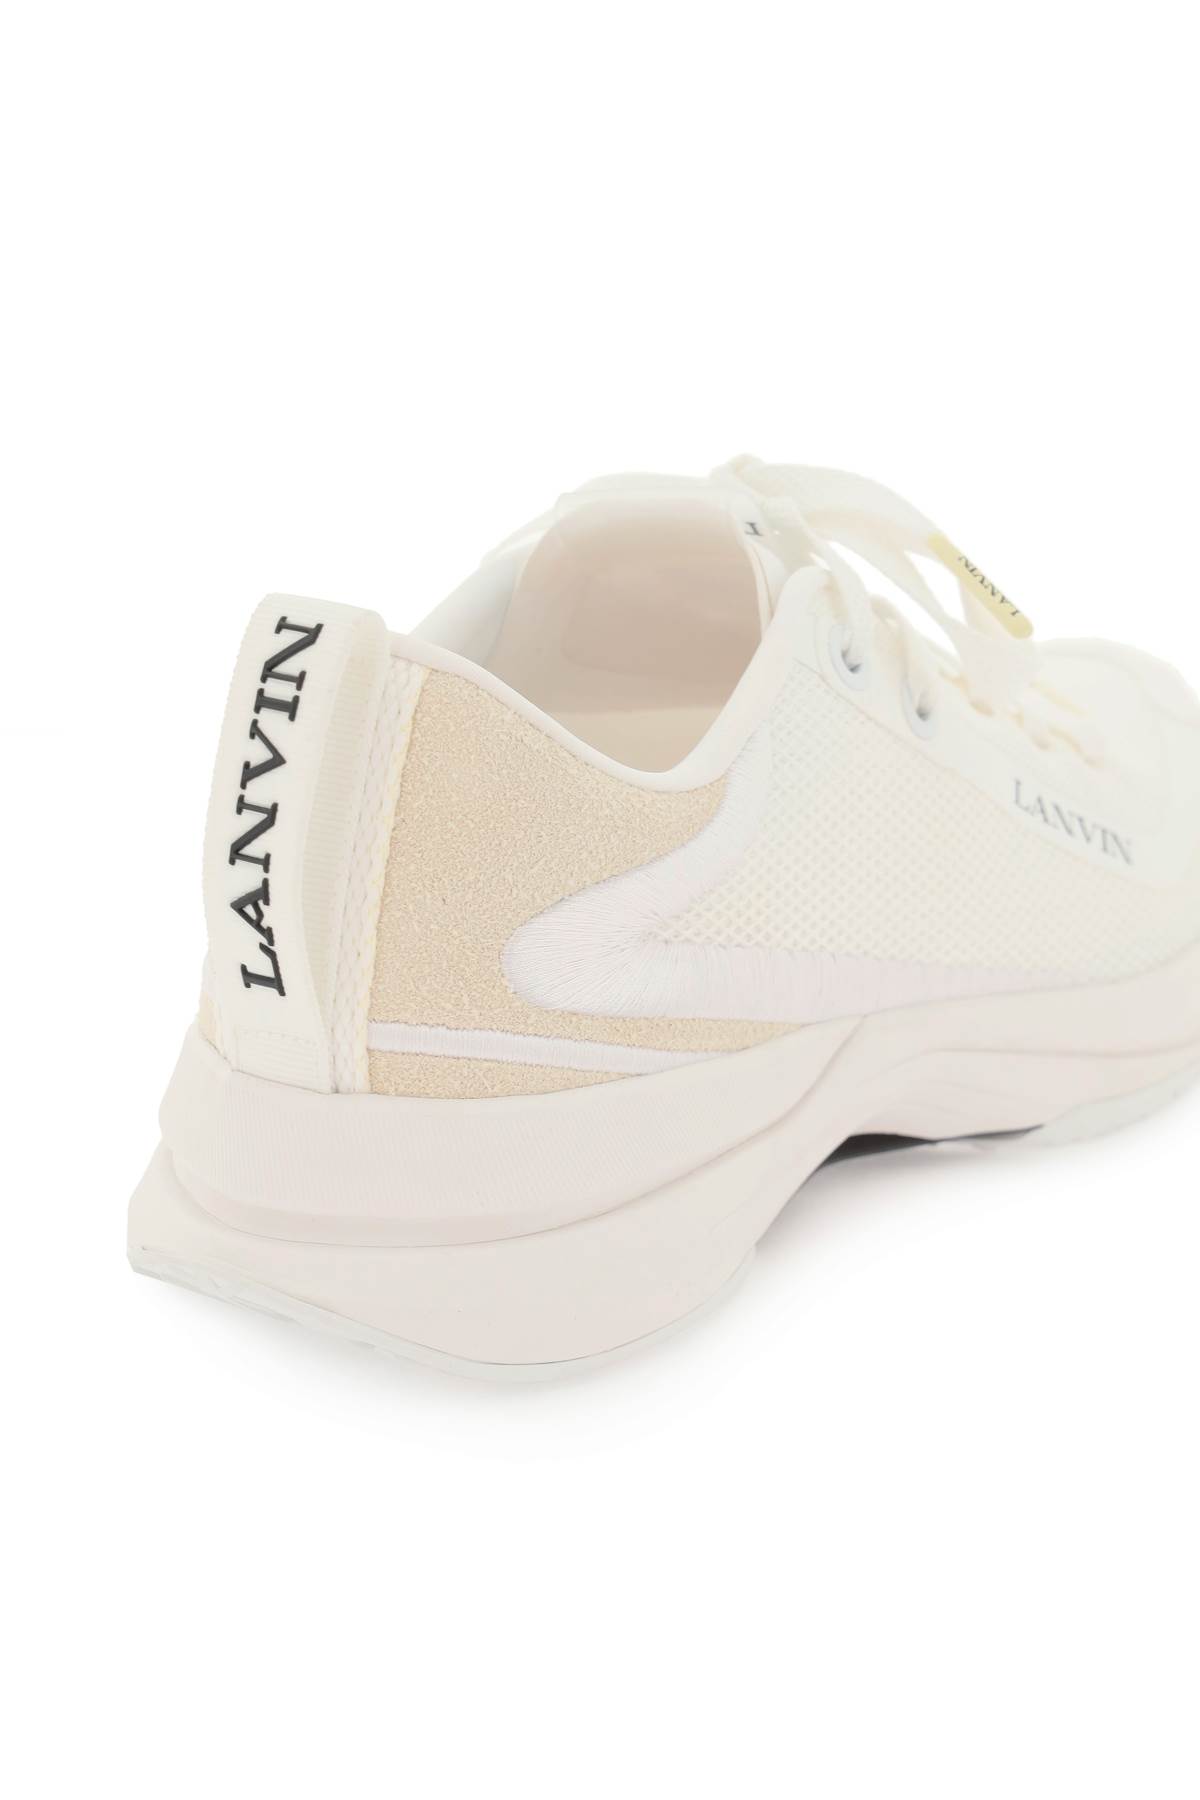 Shop Lanvin Mesh Li Sneakers In White White